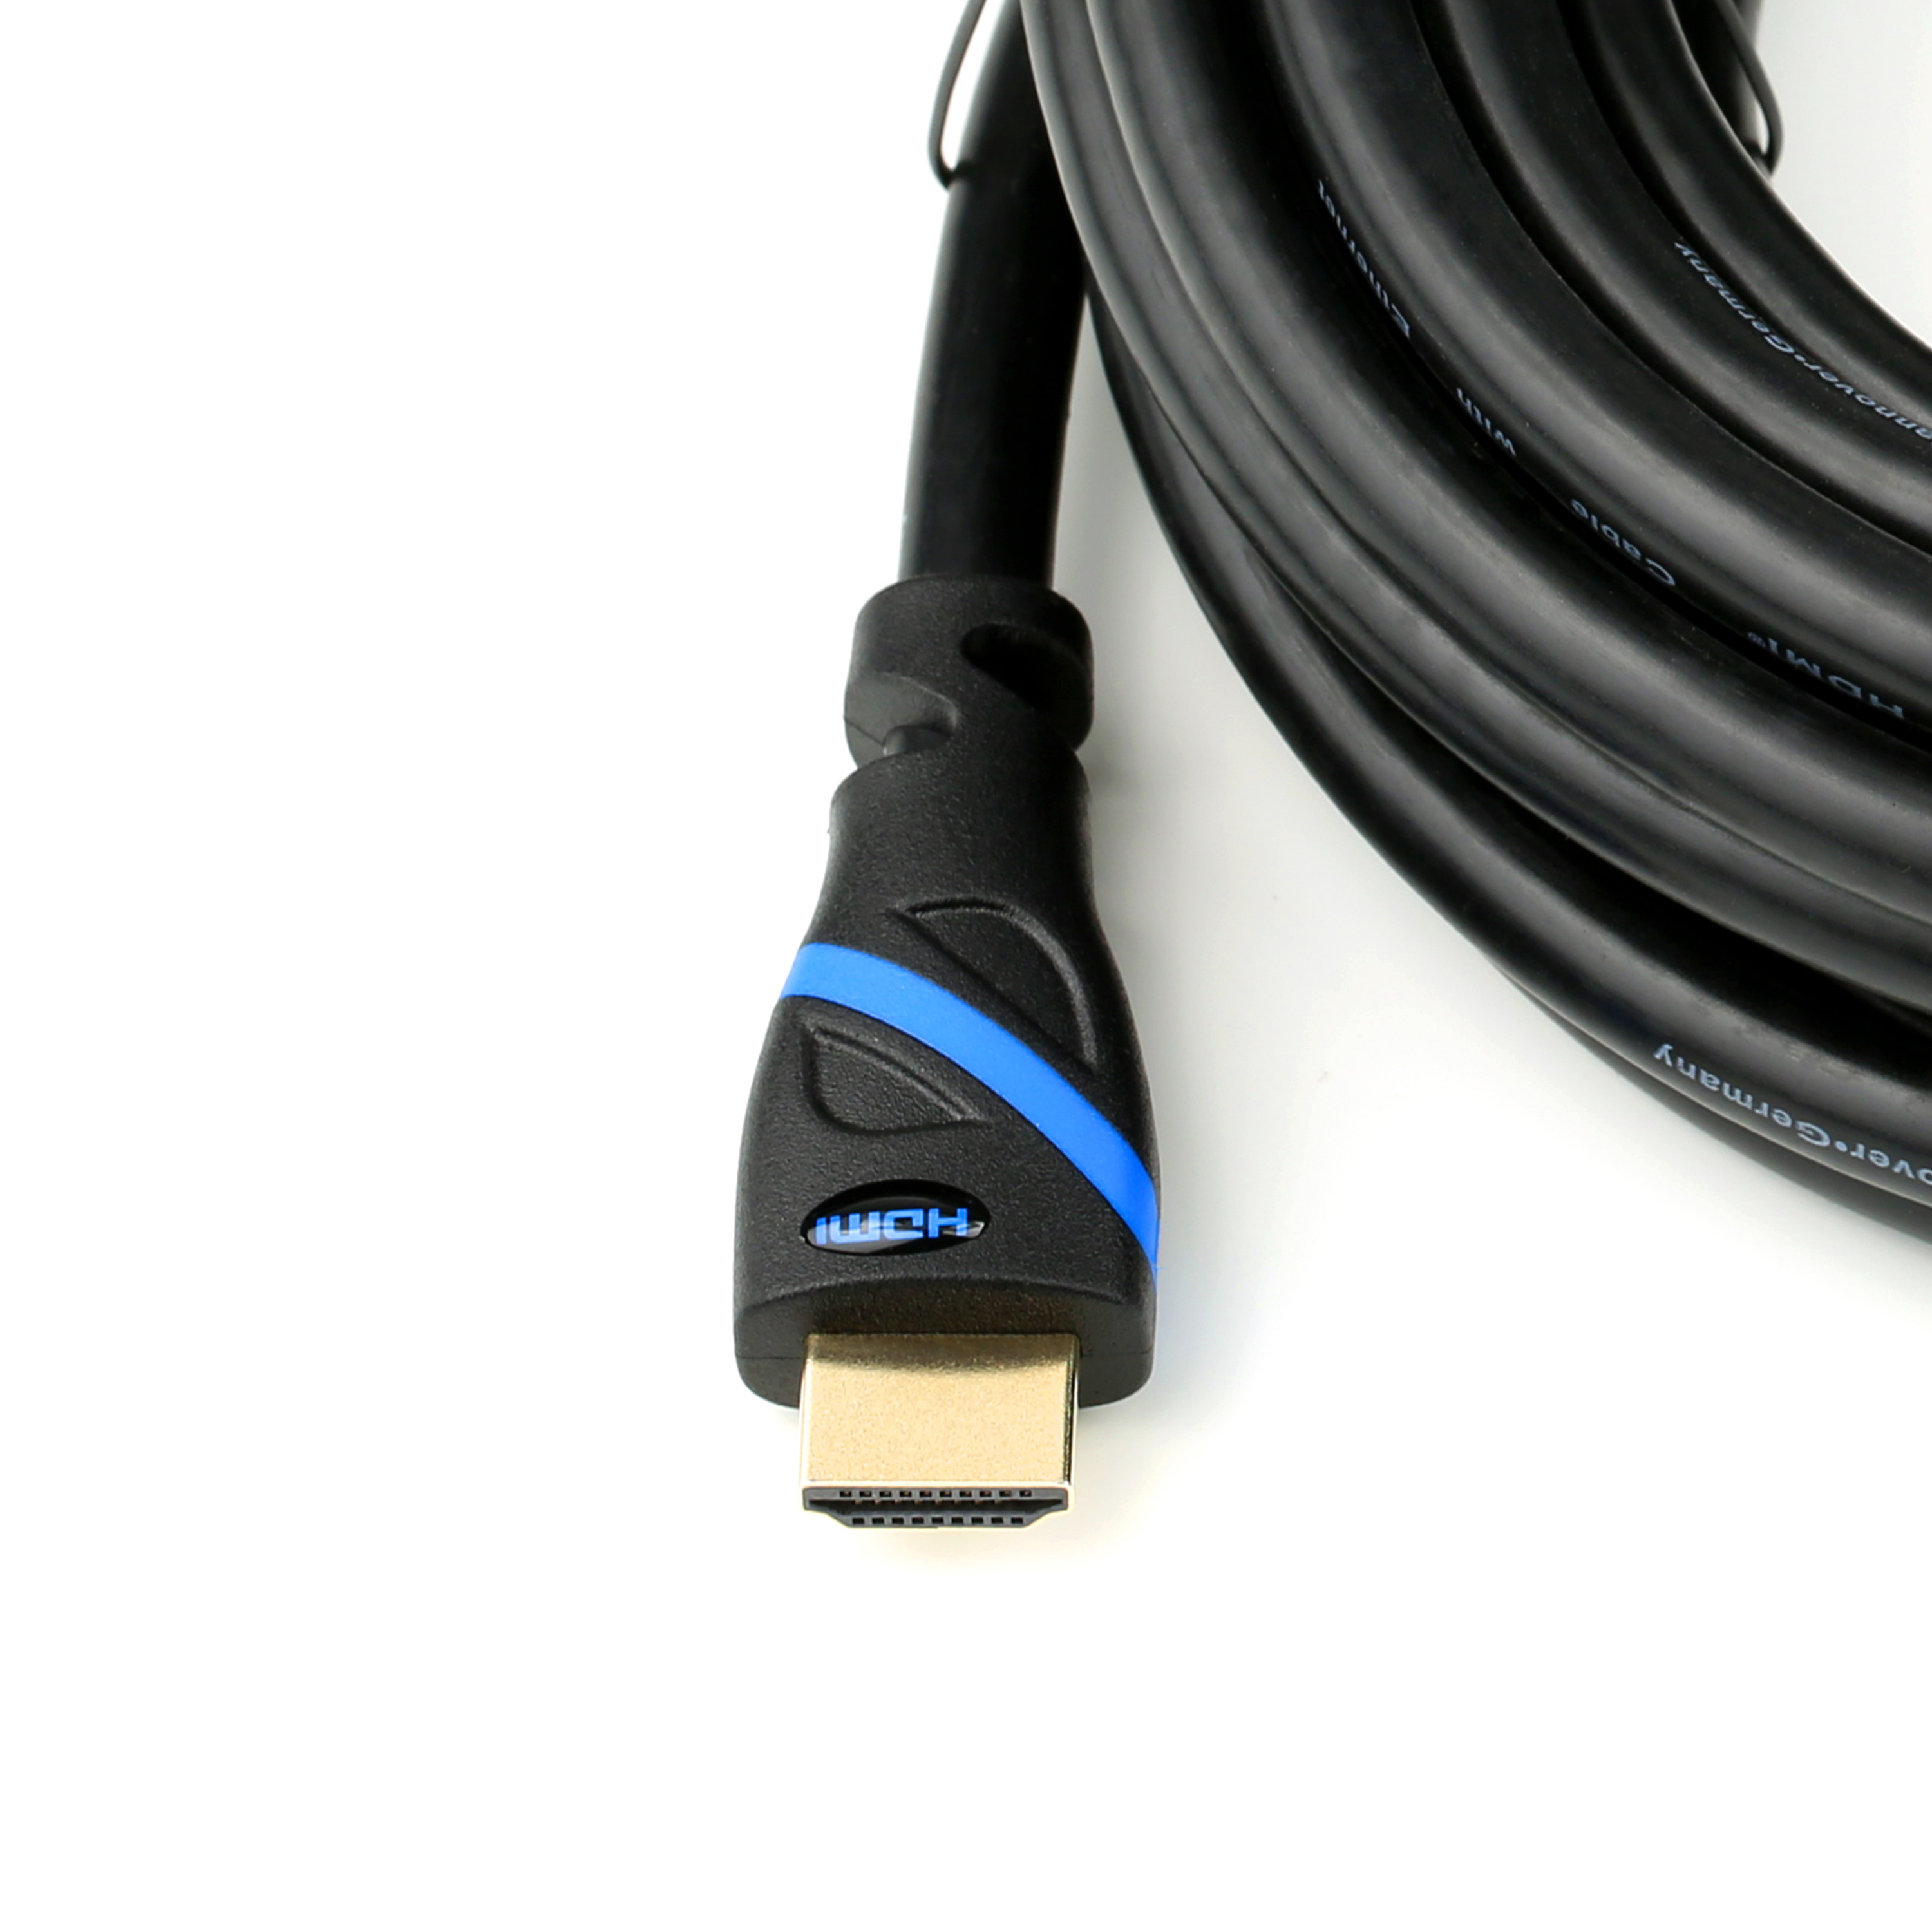 CSL HDMI 2.0 Kabel, 0,5m Kabel, HDMI schwarz/blau